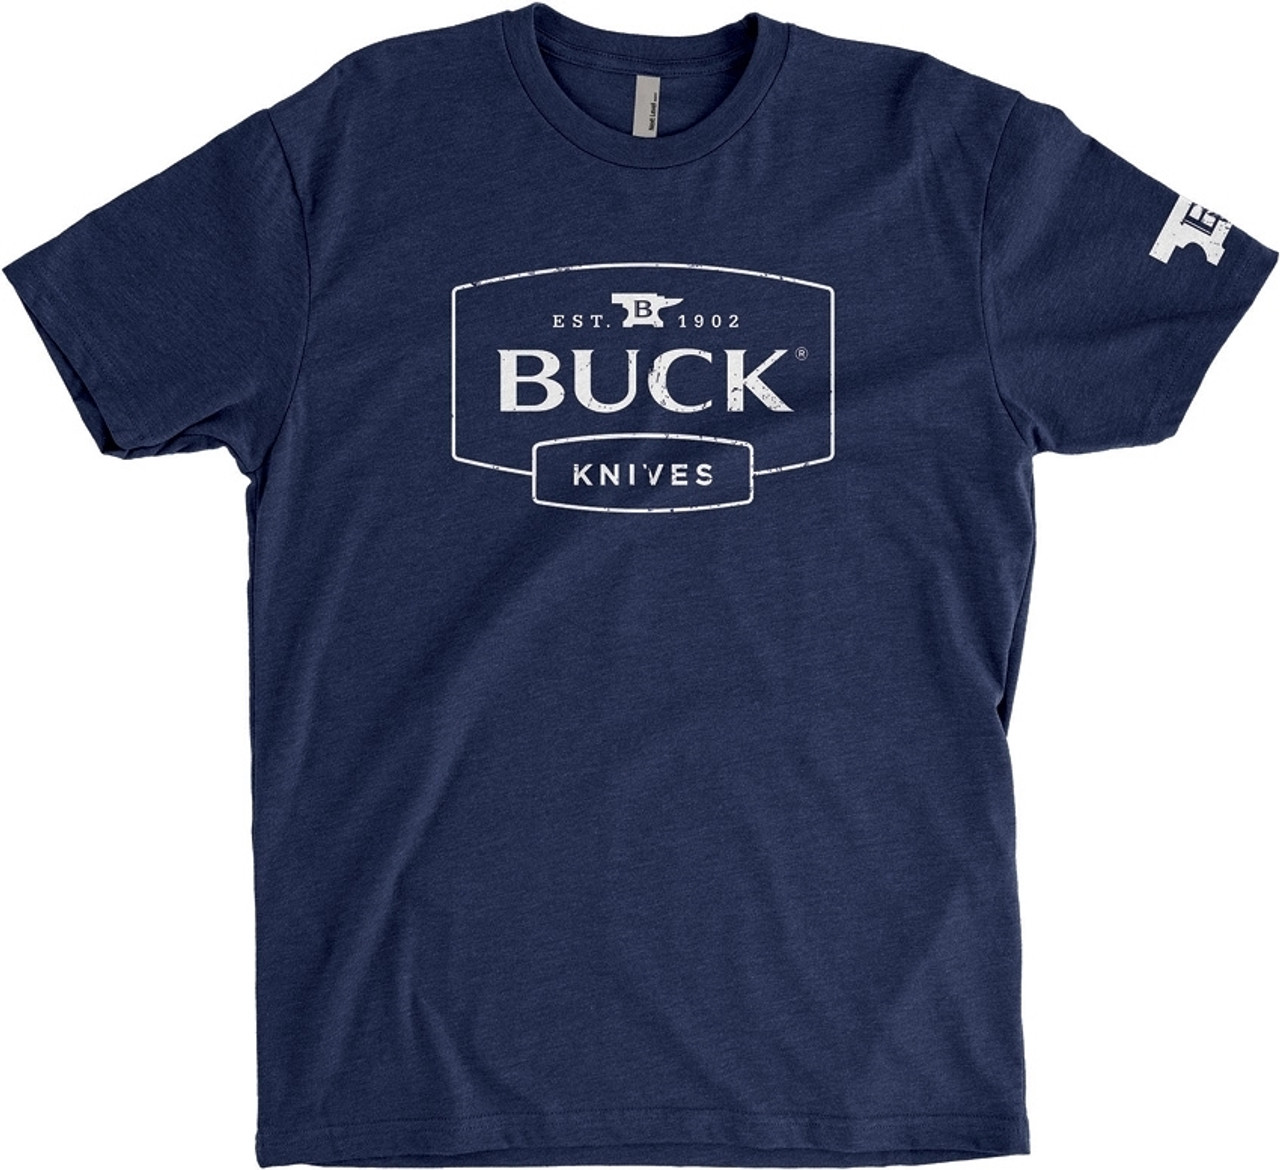 Buck